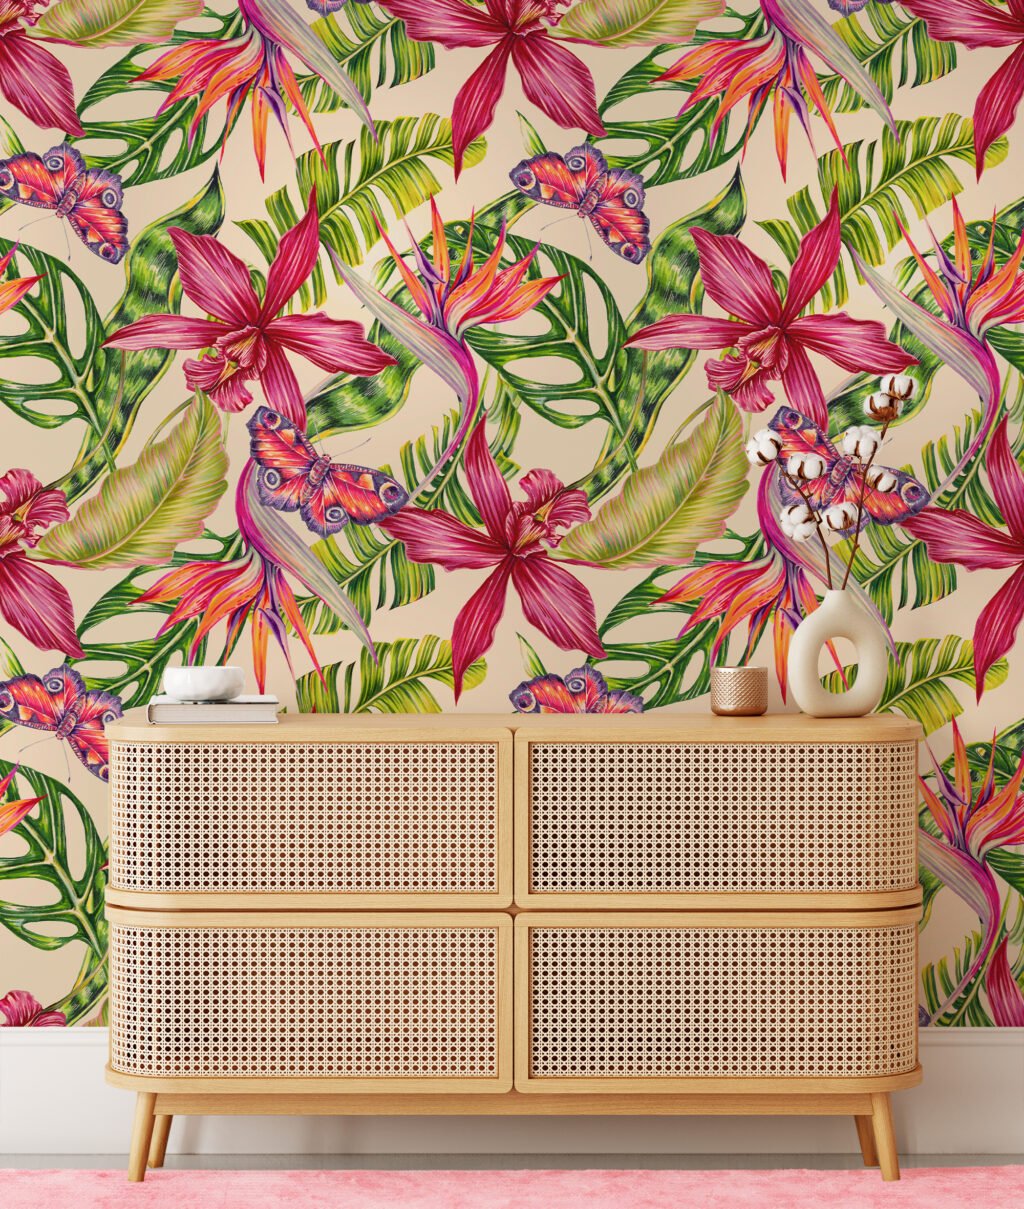 Tropikal Renkli Çiçekler ve Kelebekler Duvar Kağıdı, Egzotik Botanik Tropikal 3D Duvar Posteri Çiçekli Duvar Kağıtları 6